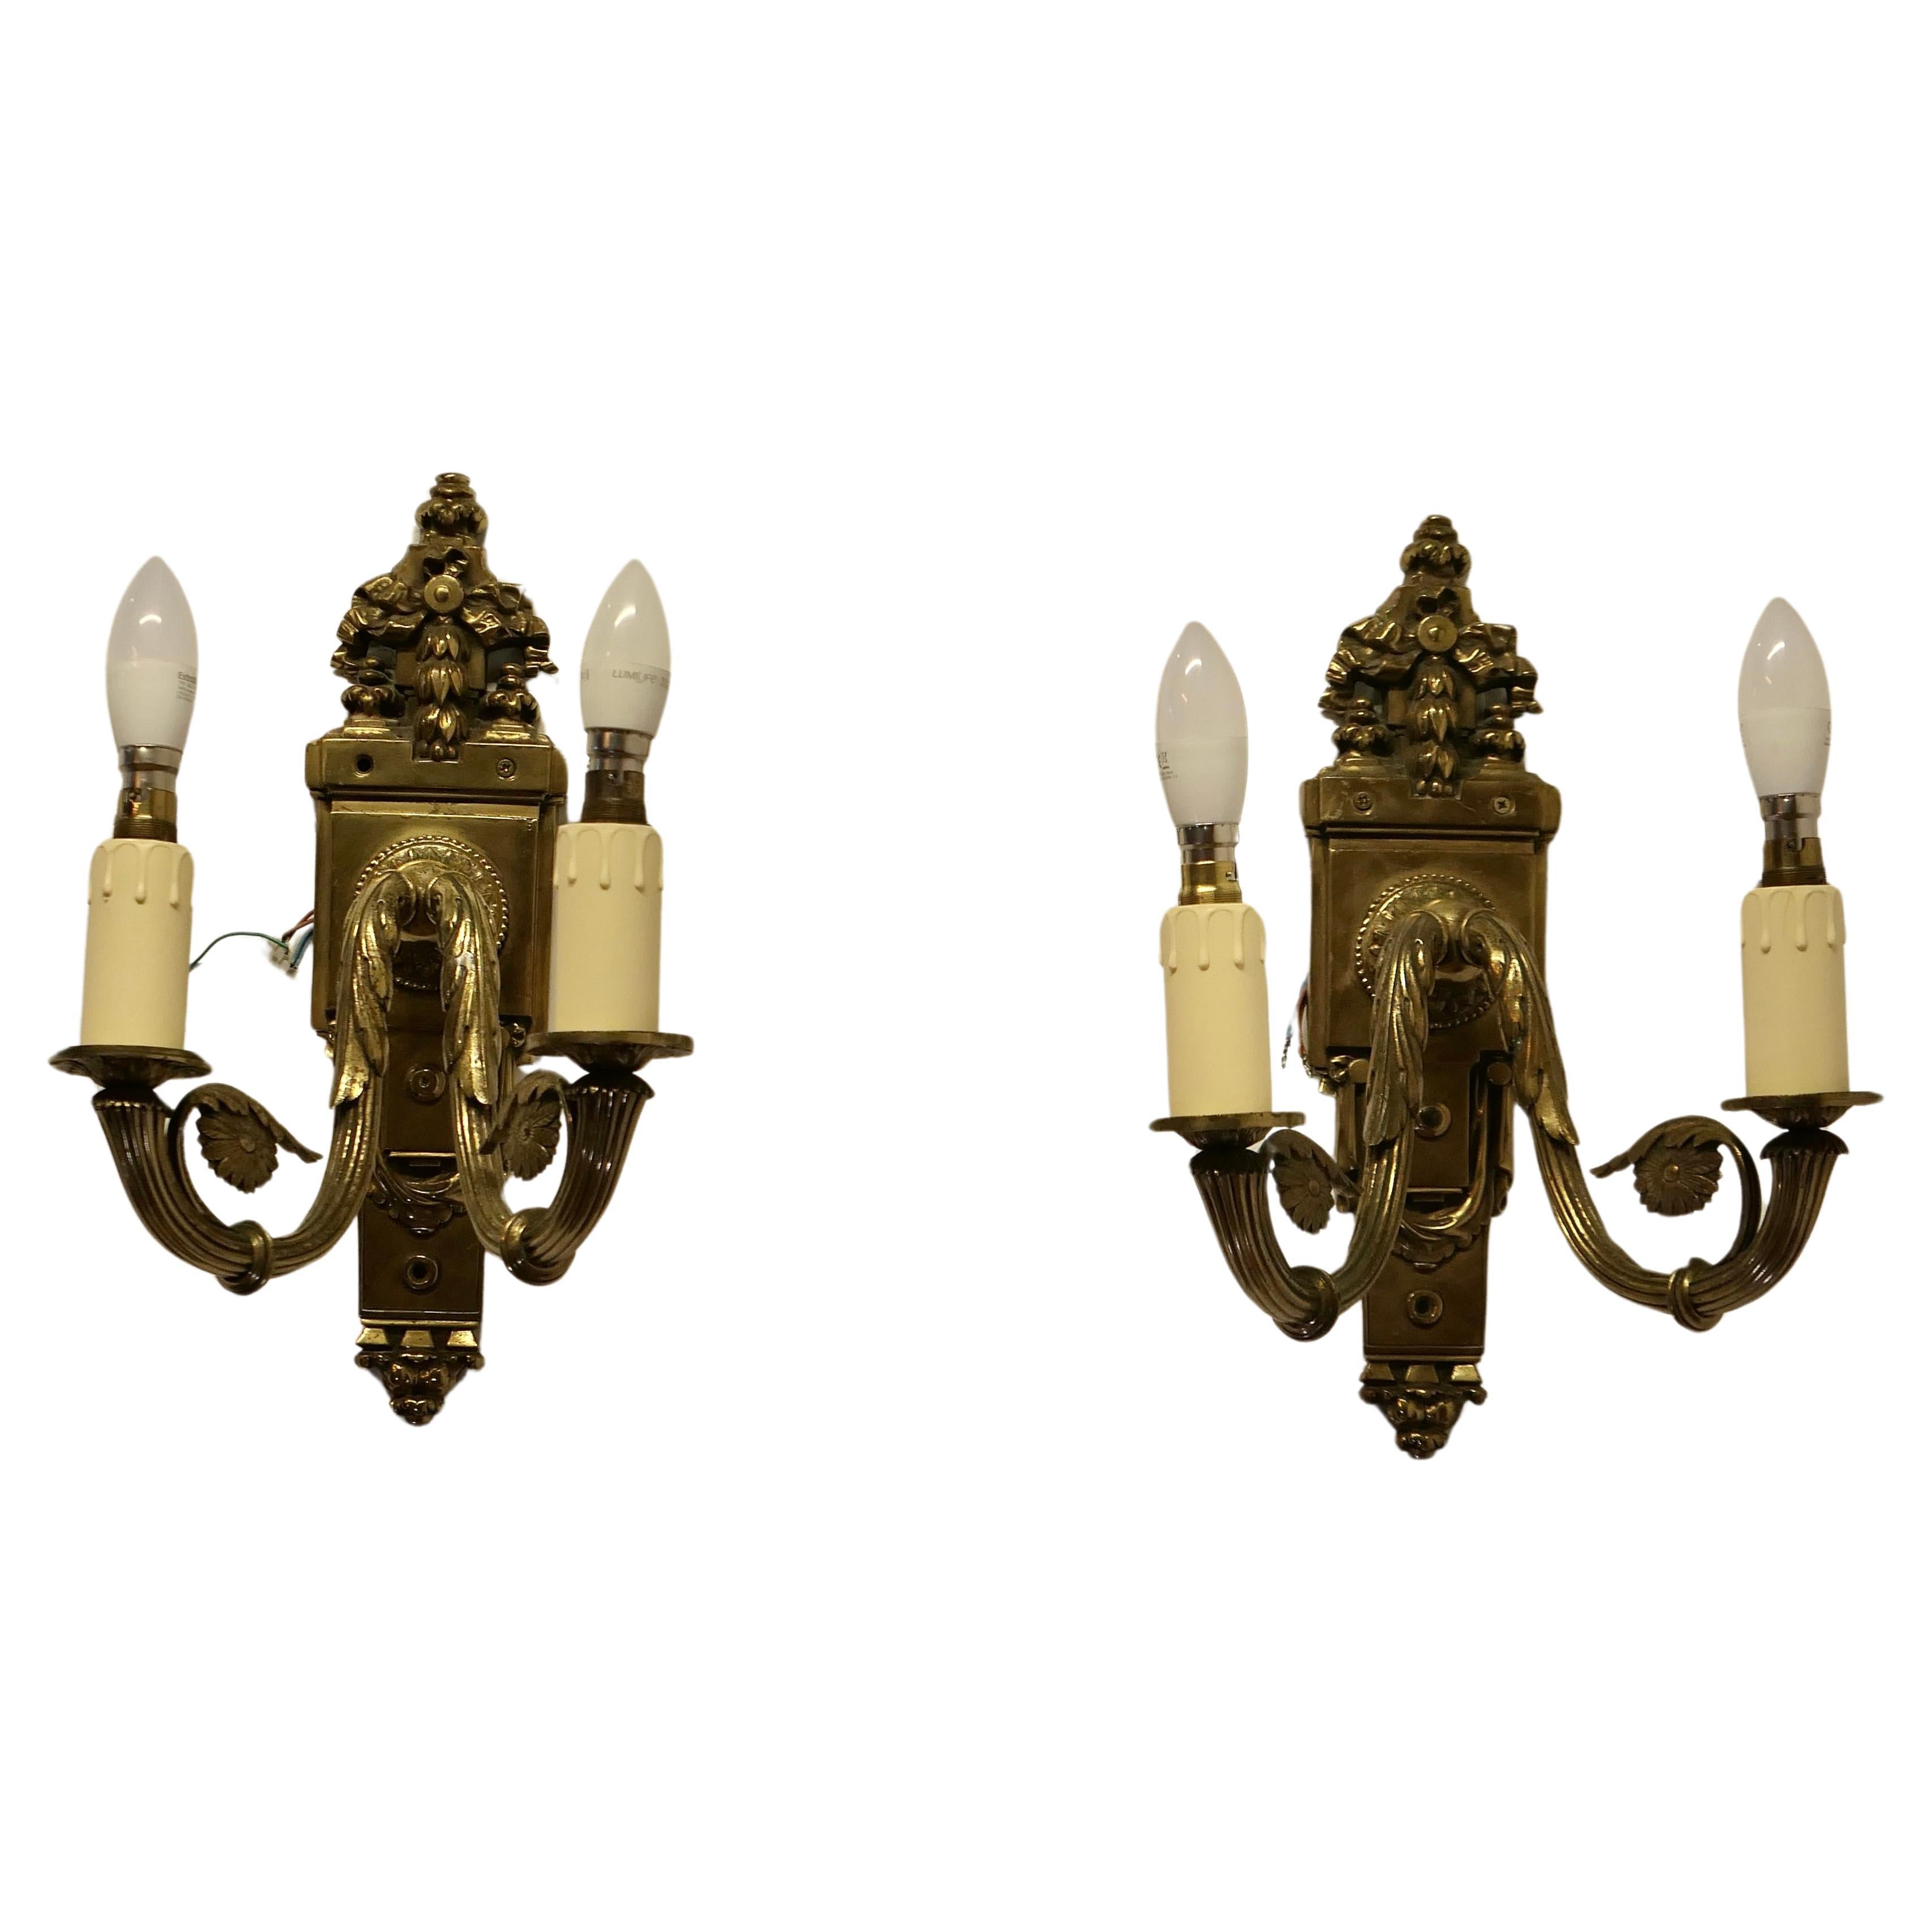 Ein Paar Neo Classical Large Brass Twin Wall Lights  Dies ist eine sehr attraktive 